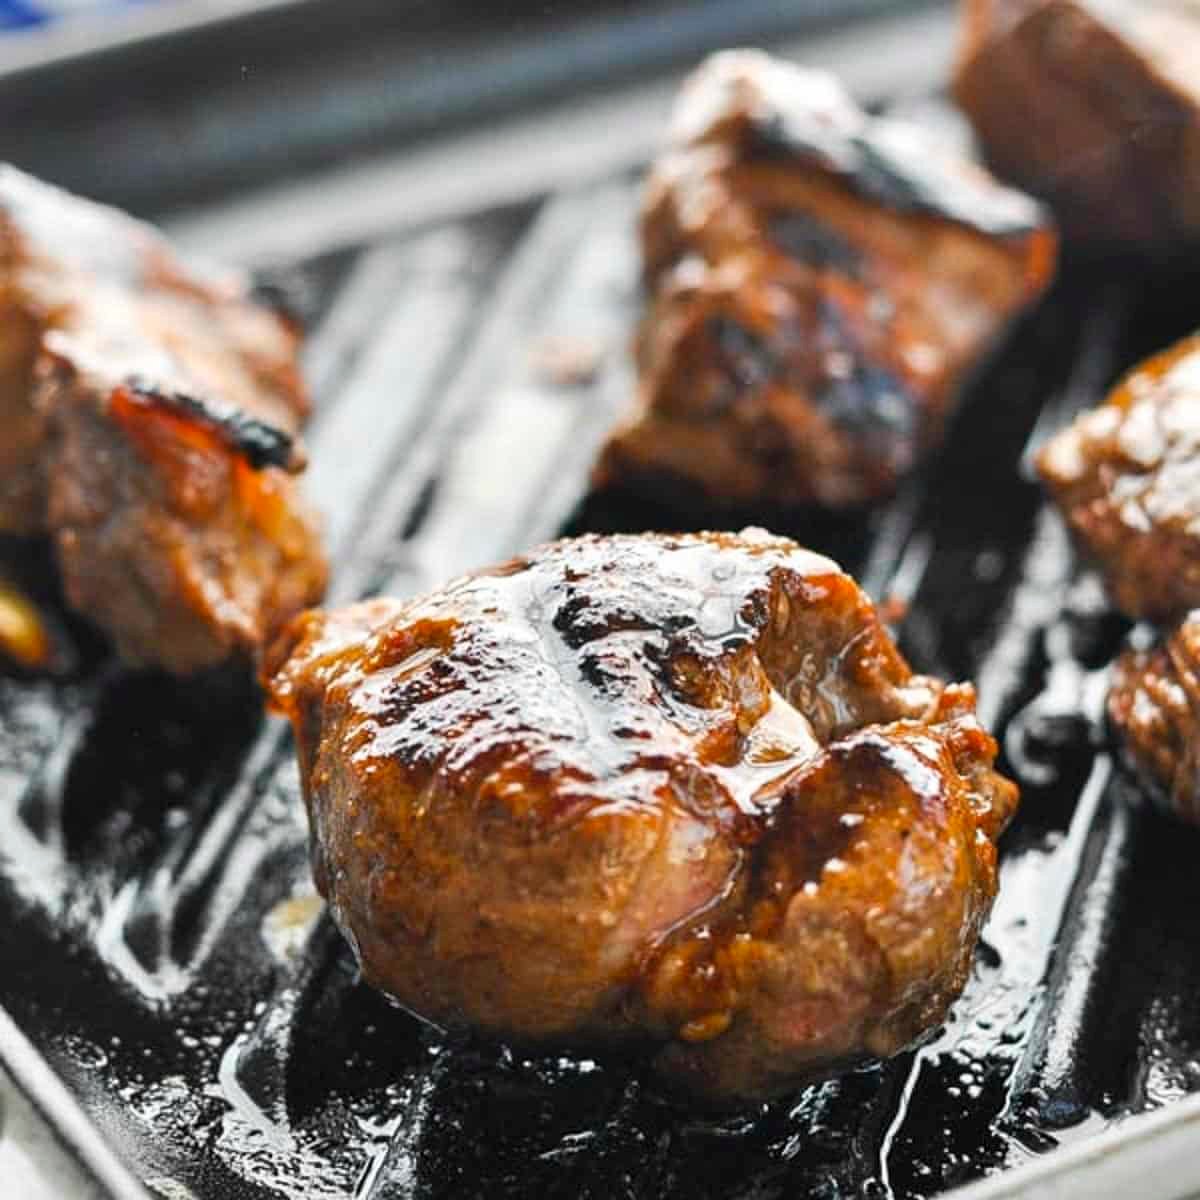 Square side shot of grilled steak tips.